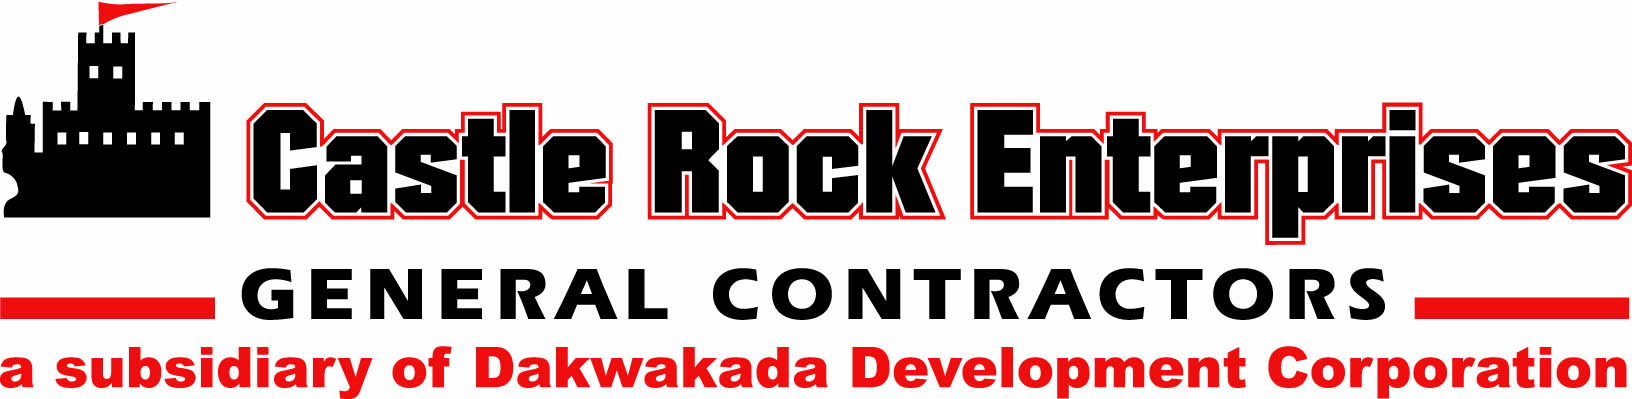 Castle Rock Enterprises logo